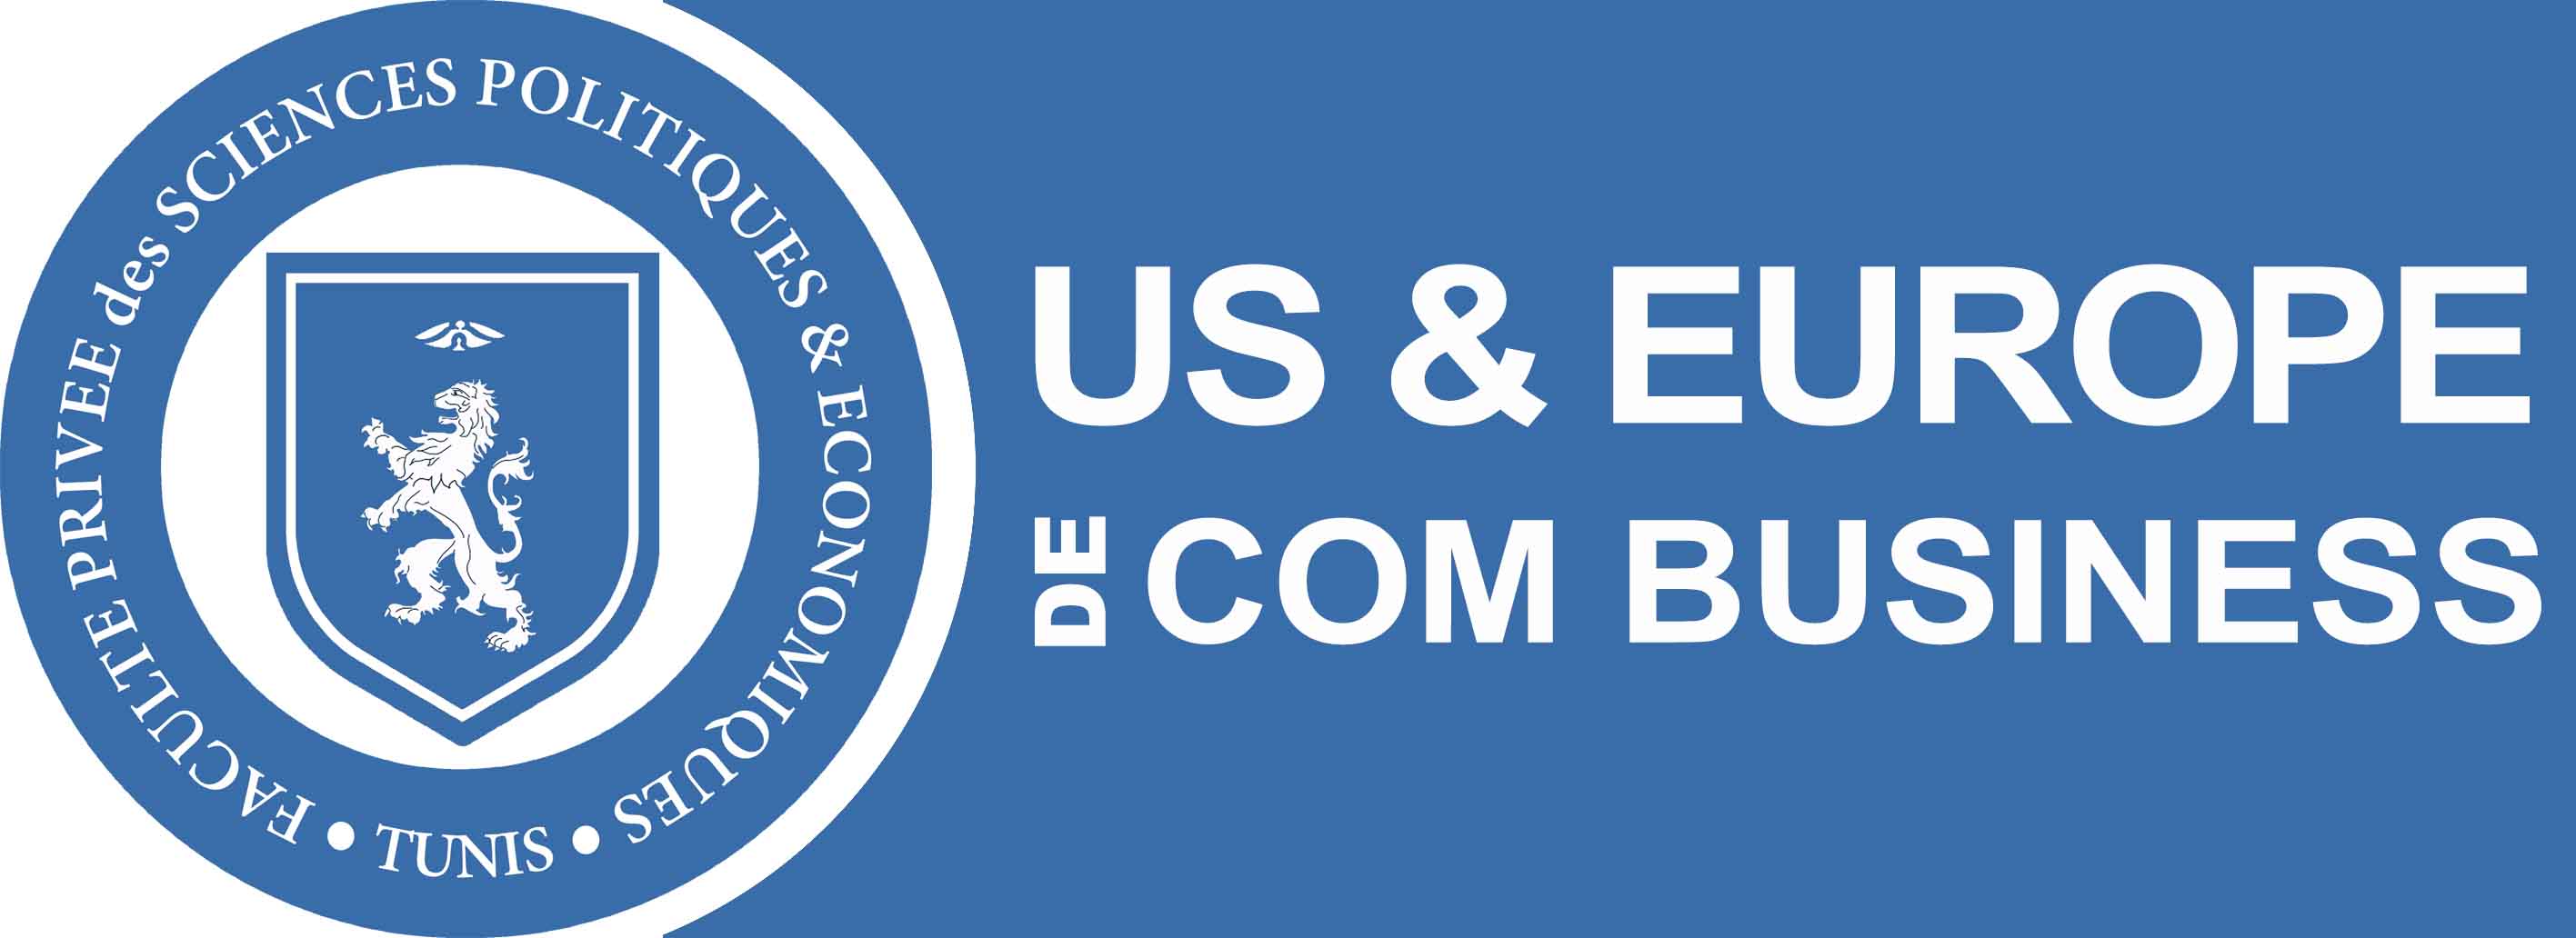 US&Europe de Com Business School